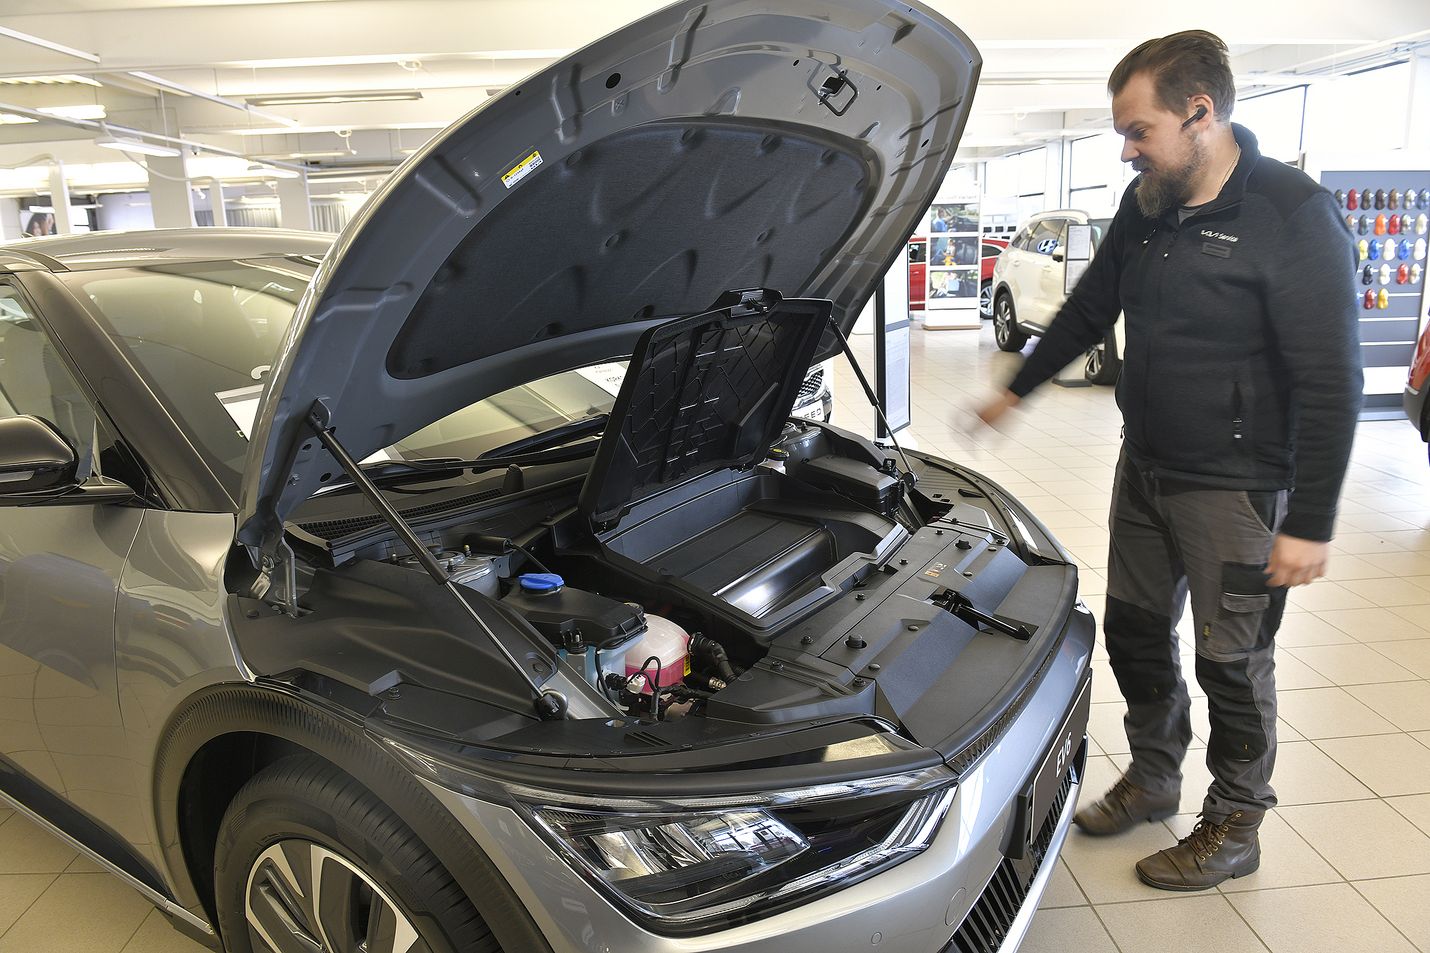 Käyttöauton huoltopäällikkö Juha-Matti Kangas kertoo, että merkkihuoltamoilla ollaan autokannan sähköistyessä ”uuden edessä”,    sillä täyssähköautoista ei ole kenelläkään pitkää kokemusta.